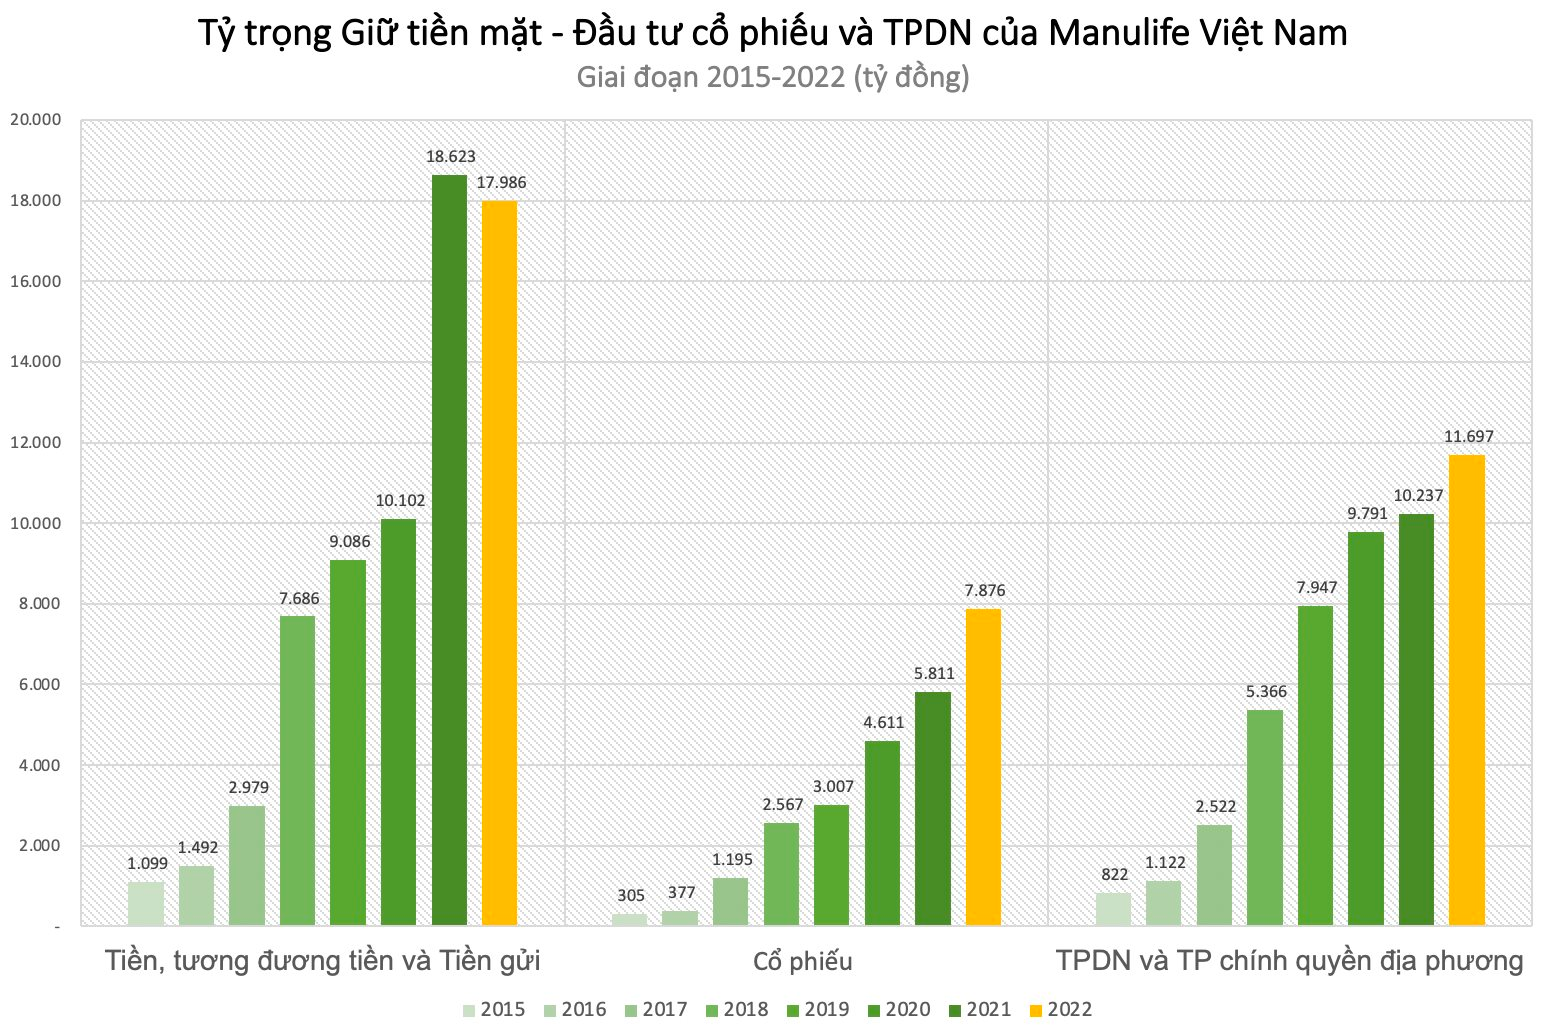 Manulife Việt Nam: “Tay chơi” sôi nổi trên TTCK, giá trị danh mục cổ phiếu tăng trung bình 70%/năm lên gần 7.900 tỷ, dự phòng giảm giá 840 tỷ - Ảnh 2.